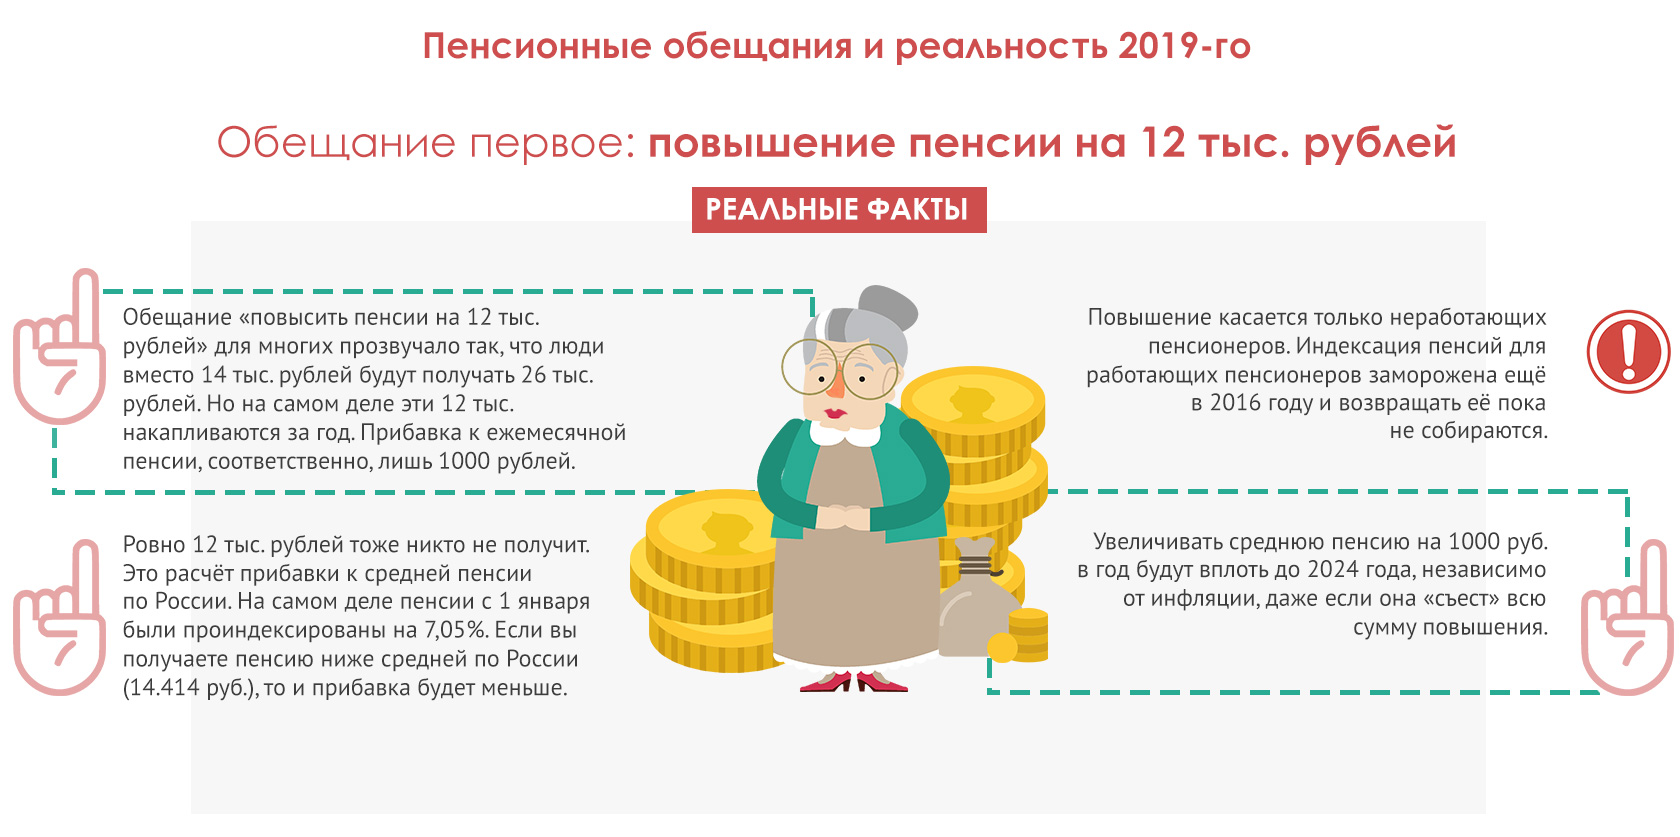 С апреля 2024 повышение пенсии ожидается. Как накопить на пенсию самостоятельно. Как самому позаботиться о пенсии?. Проблема низких пенсий в России. Получение пенсии это распределение.